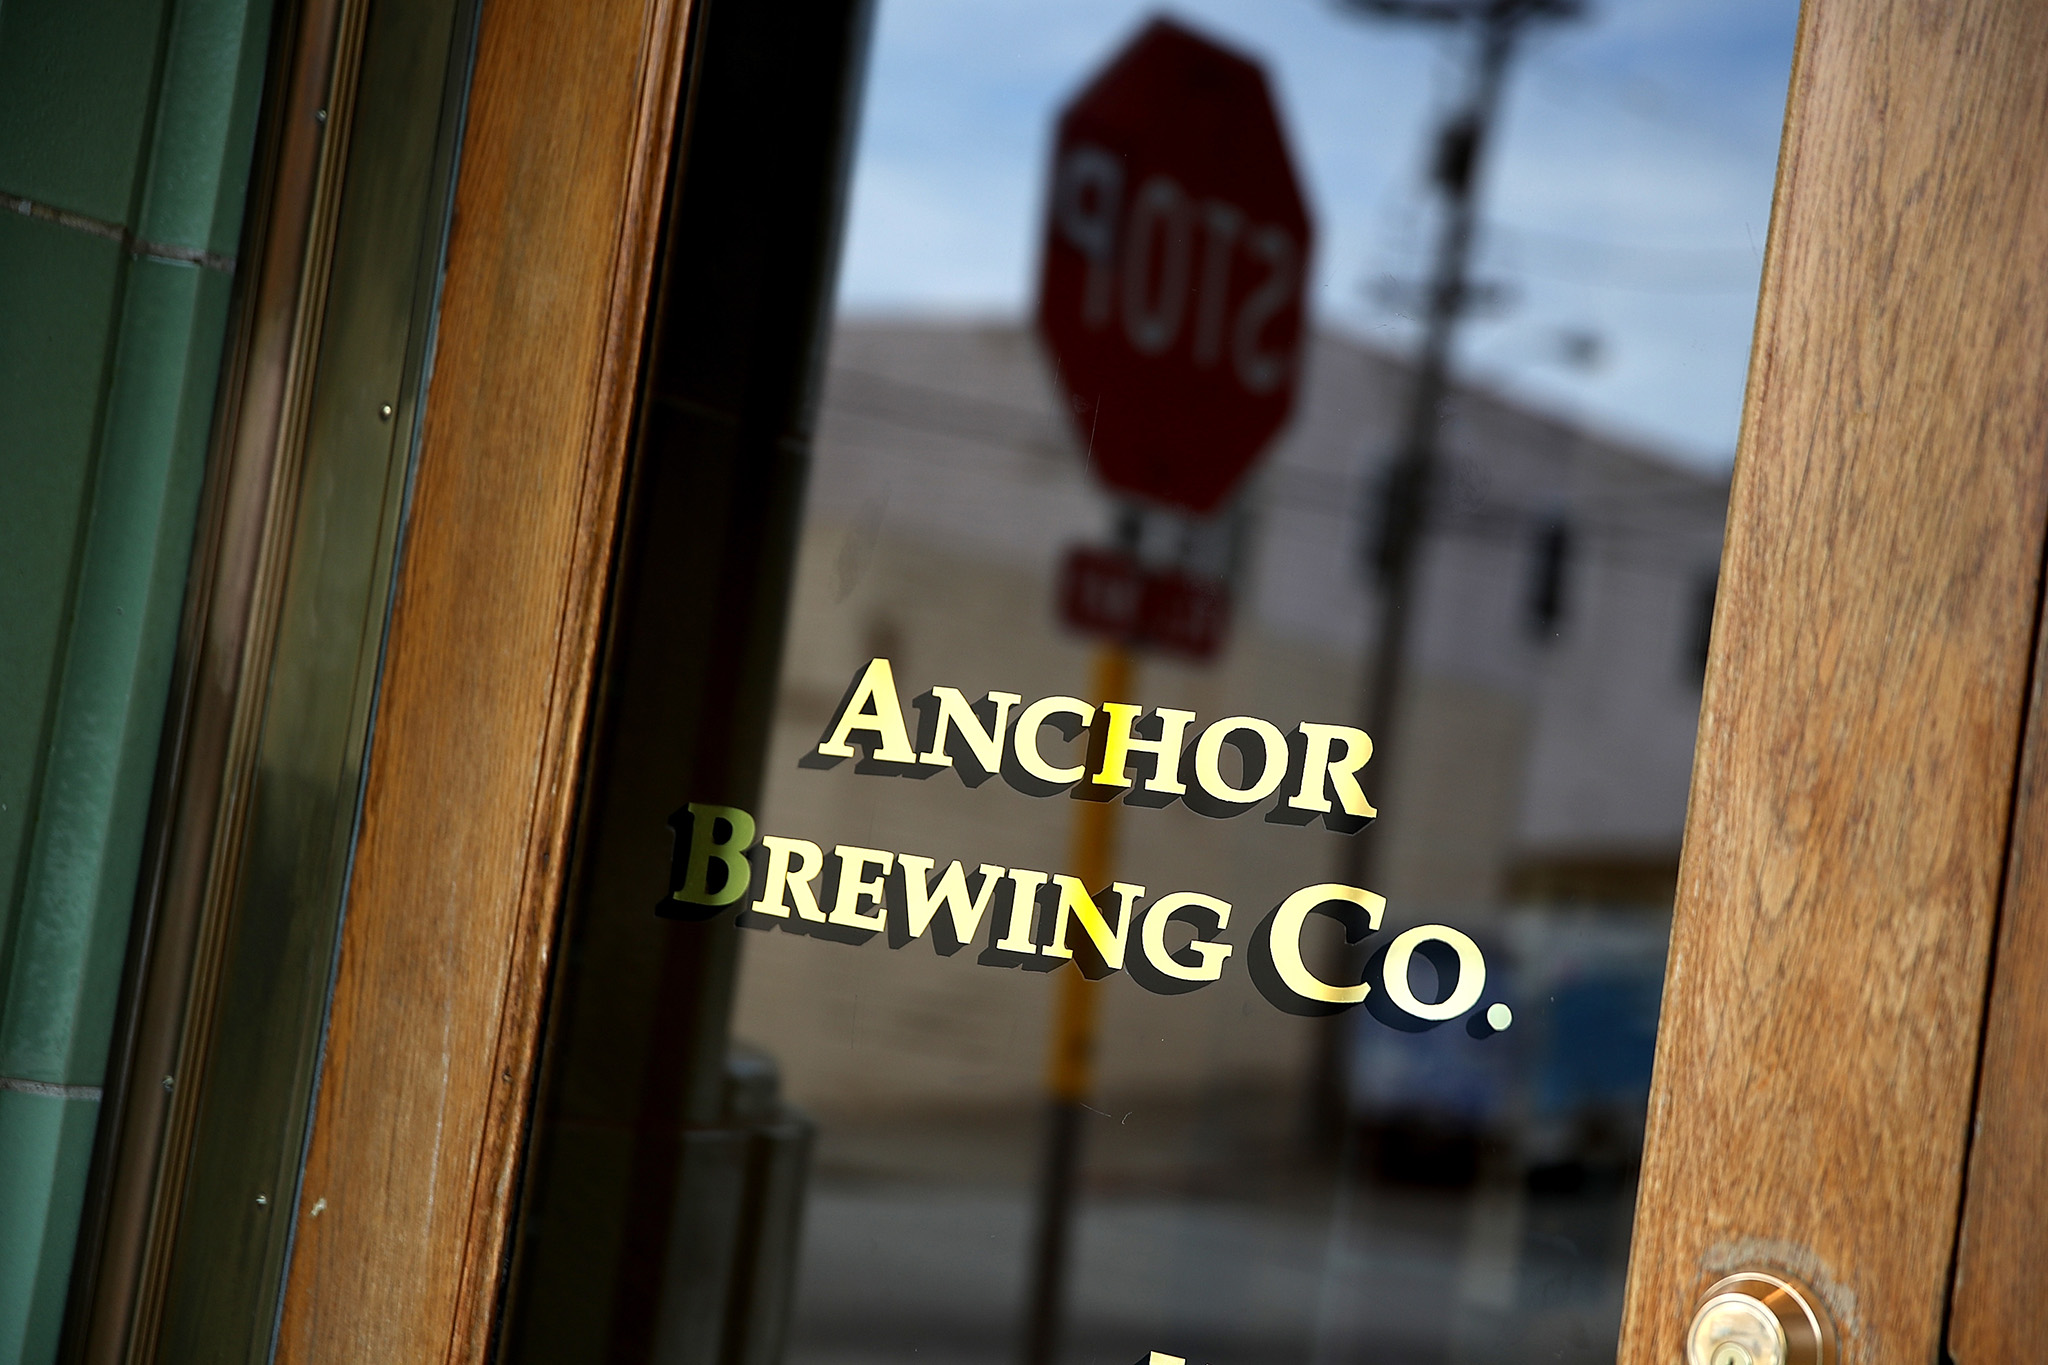 Anchor Brewing Company San Francisco mengatakan telah menghentikan operasinya